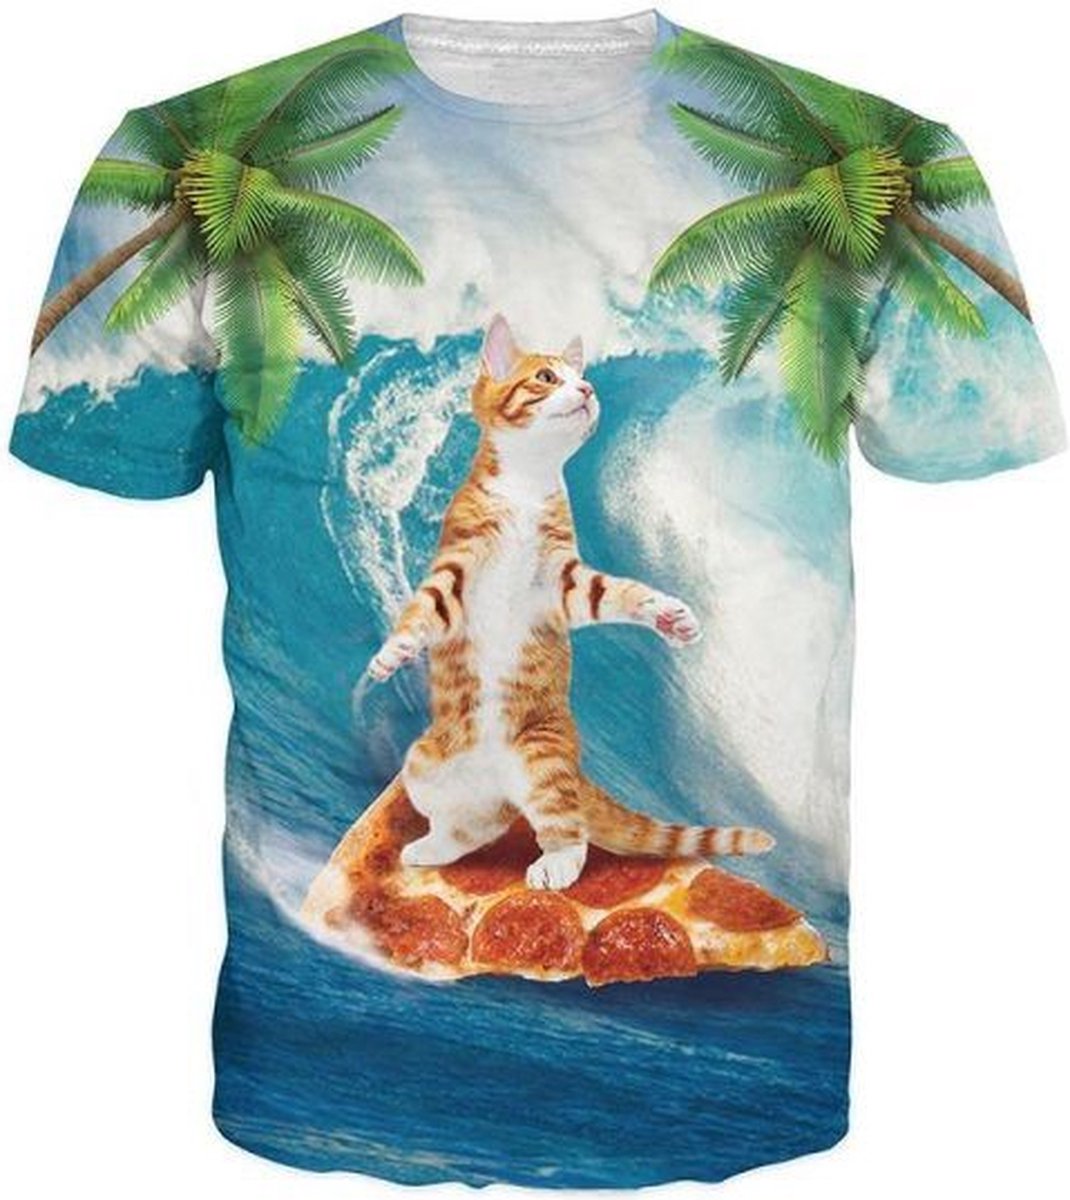 Pizza surfer kat Maat S Crew neck - Festival shirt - Superfout - Fout T-shirt - Feestkleding - Festival outfit - Foute kleding - Kattenshirt - Kleding fout feest - Foute party kleding